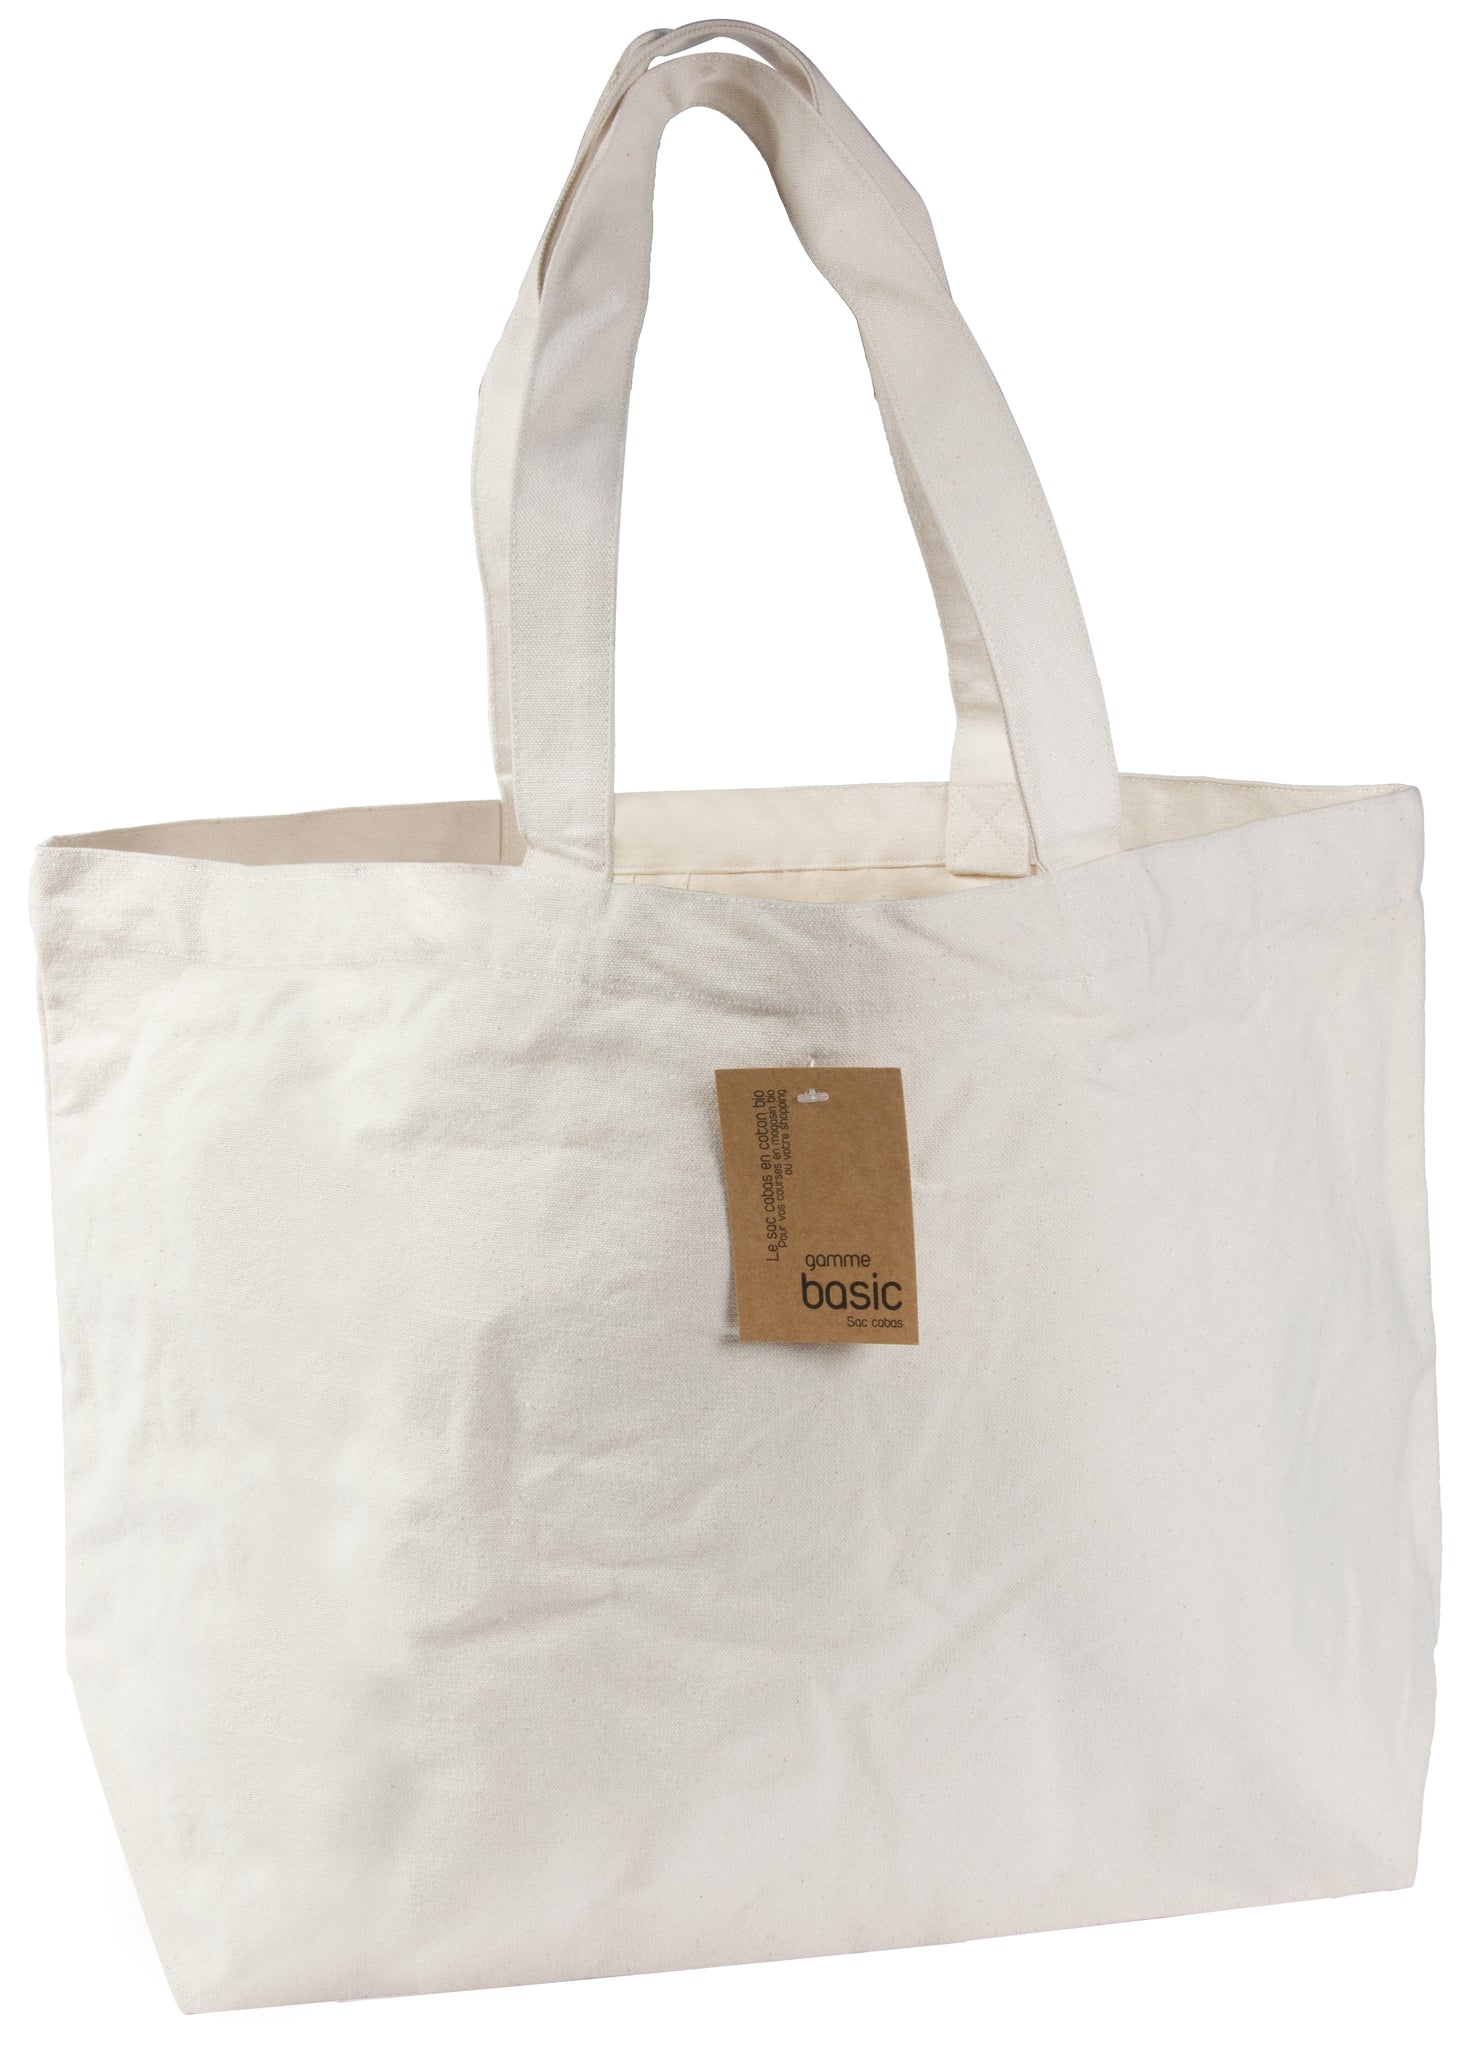 Ecru tote bag with long handles -  Τσάντα εκρού με μακριά χερούλια